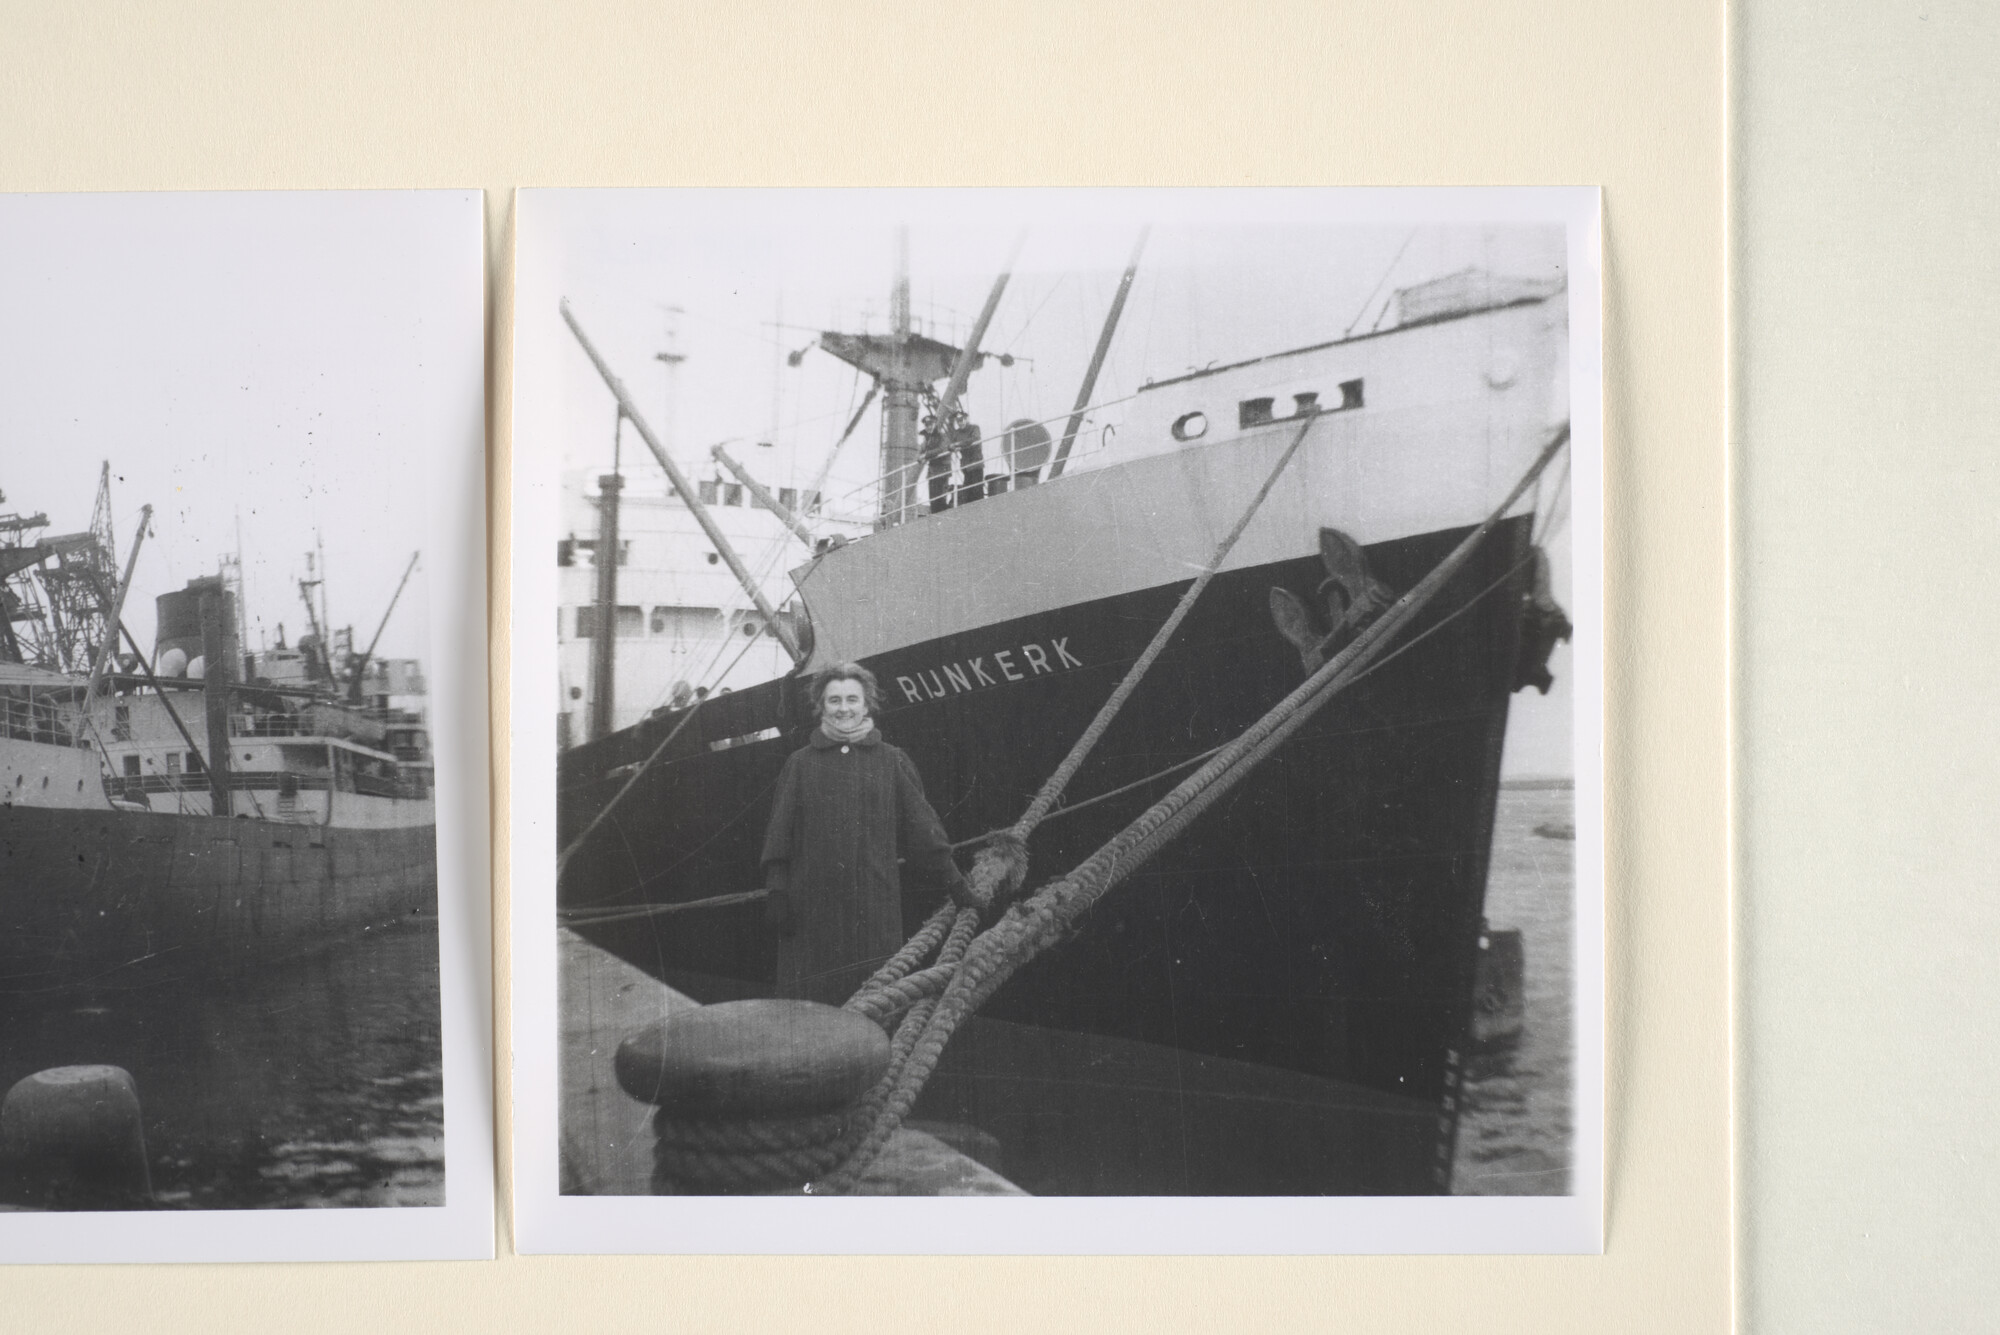 1995.5626; Negatieven van de reis met het vrachtschip (Empire type) ms. 'Rijnkerk' van de VNS van Antwerpen naar Durban; negatief